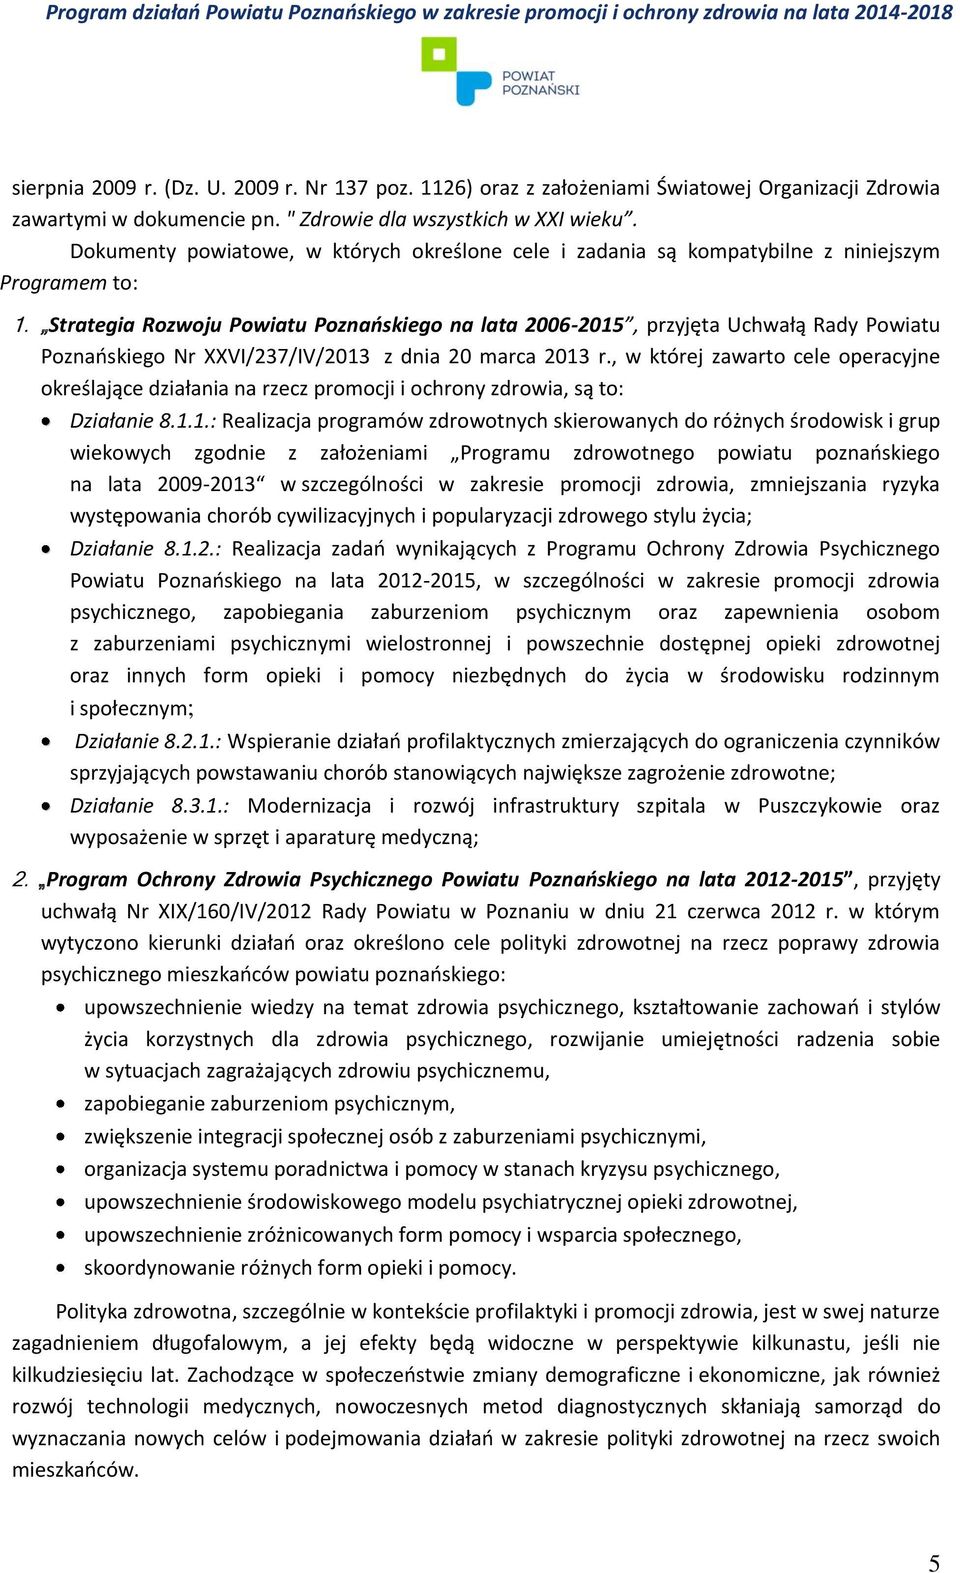 Strategia Rozwoju Powiatu Poznańskiego na lata 2006-2015, przyjęta Uchwałą Rady Powiatu Poznańskiego Nr XXVI/237/IV/2013 z dnia 20 marca 2013 r.